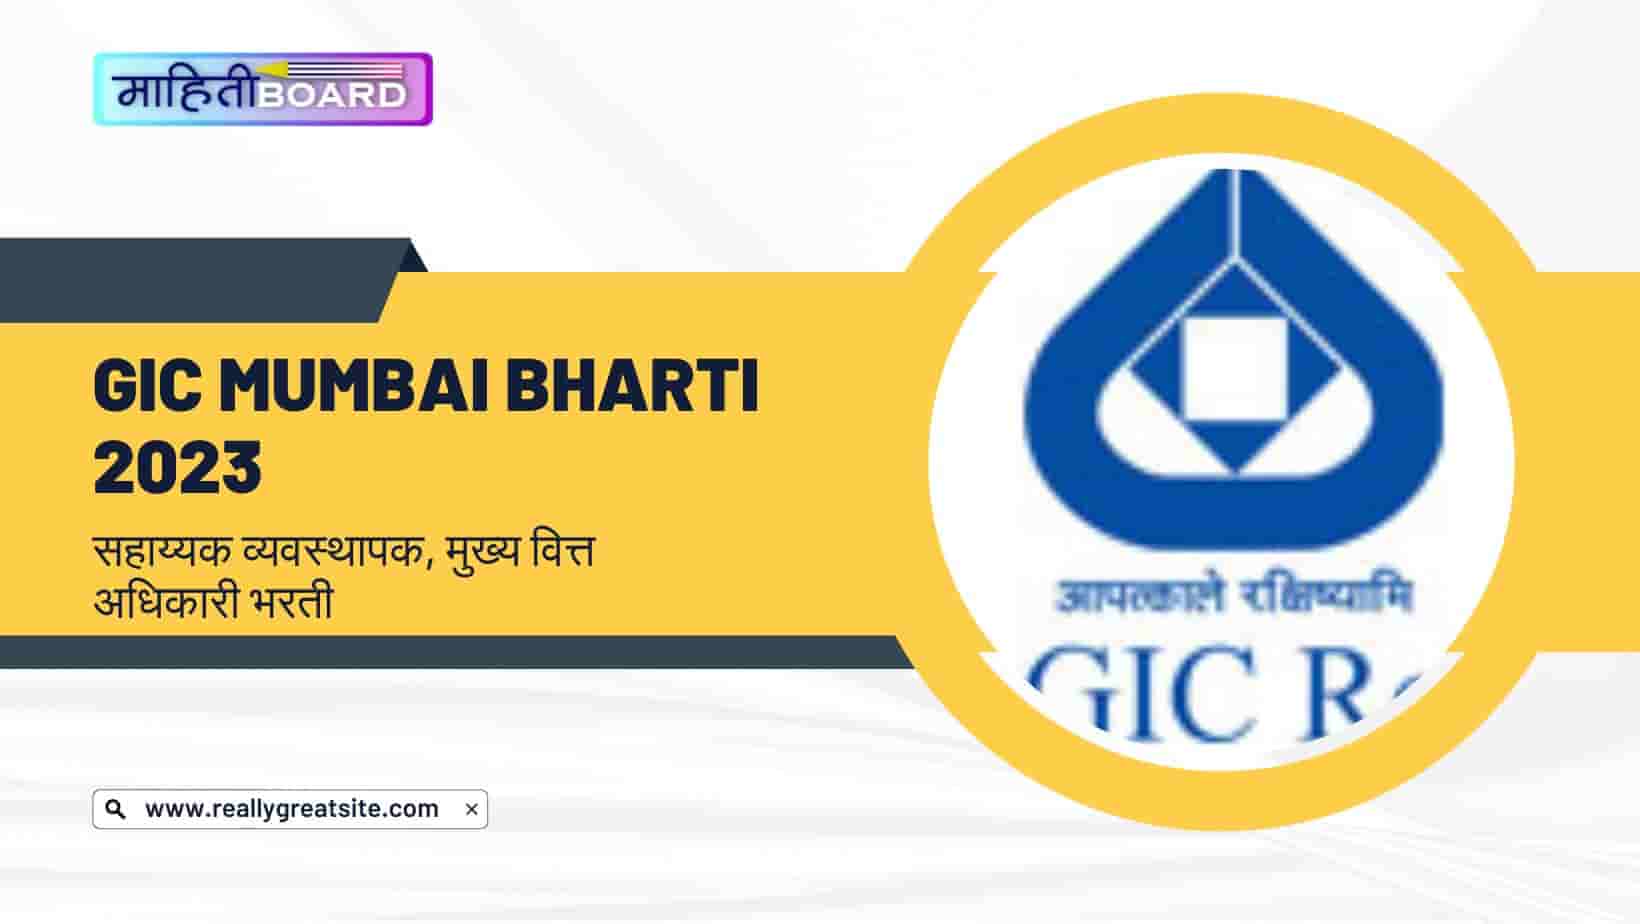 GIC Mumbai Bharti 2023